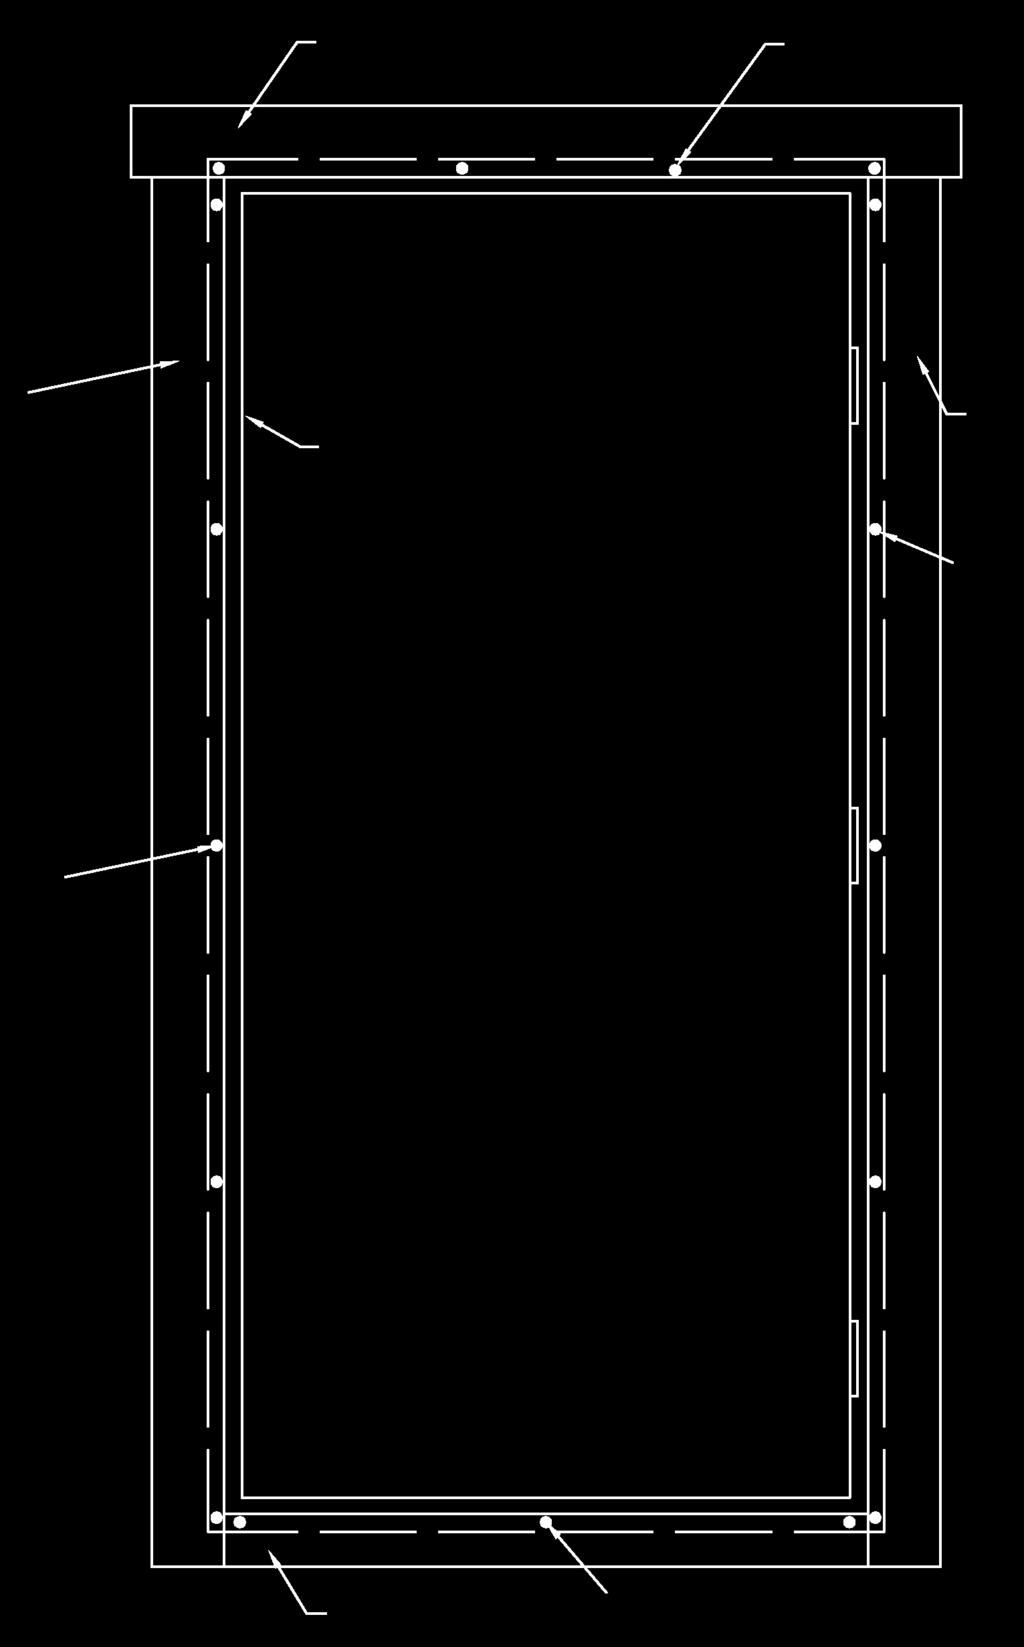 Garage Jokela 3500 mm x 5100 mm / 70 mm Ovenkarmi Kiinnitä laudat molemmin puolin ovenkarmia 2,5x60mm nauloilla alla olevan piirustuksen mukaan. Lautojen kiinnittämisessä on hyvä käyttää myös liimaa.